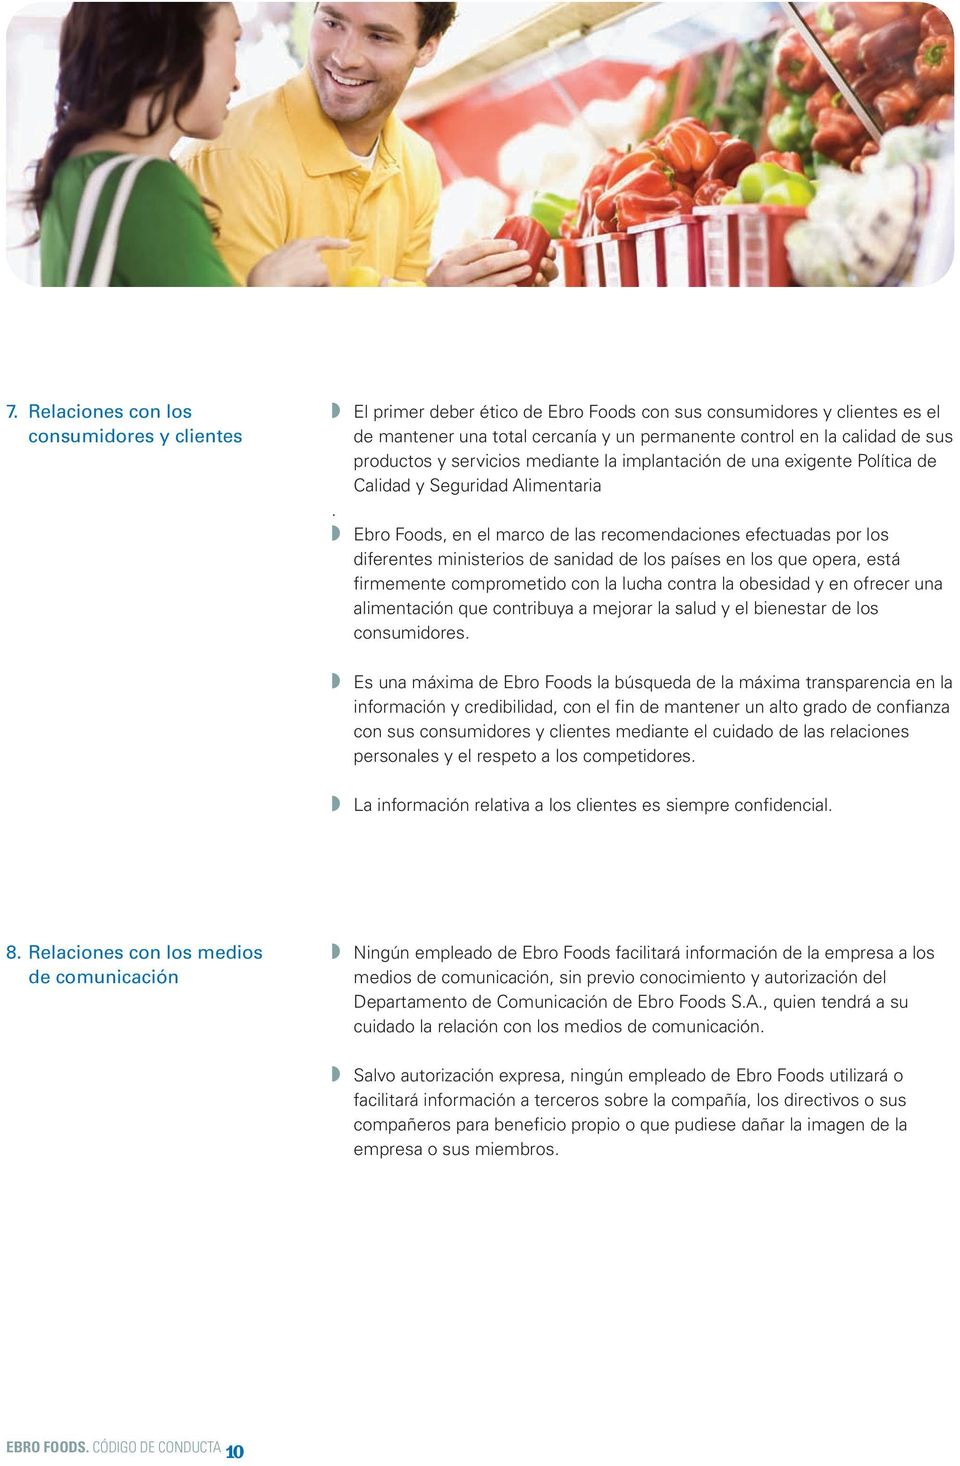 Ebro Foods, en el marco de las recomendaciones efectuadas por los diferentes ministerios de sanidad de los países en los que opera, está firmemente comprometido con la lucha contra la obesidad y en